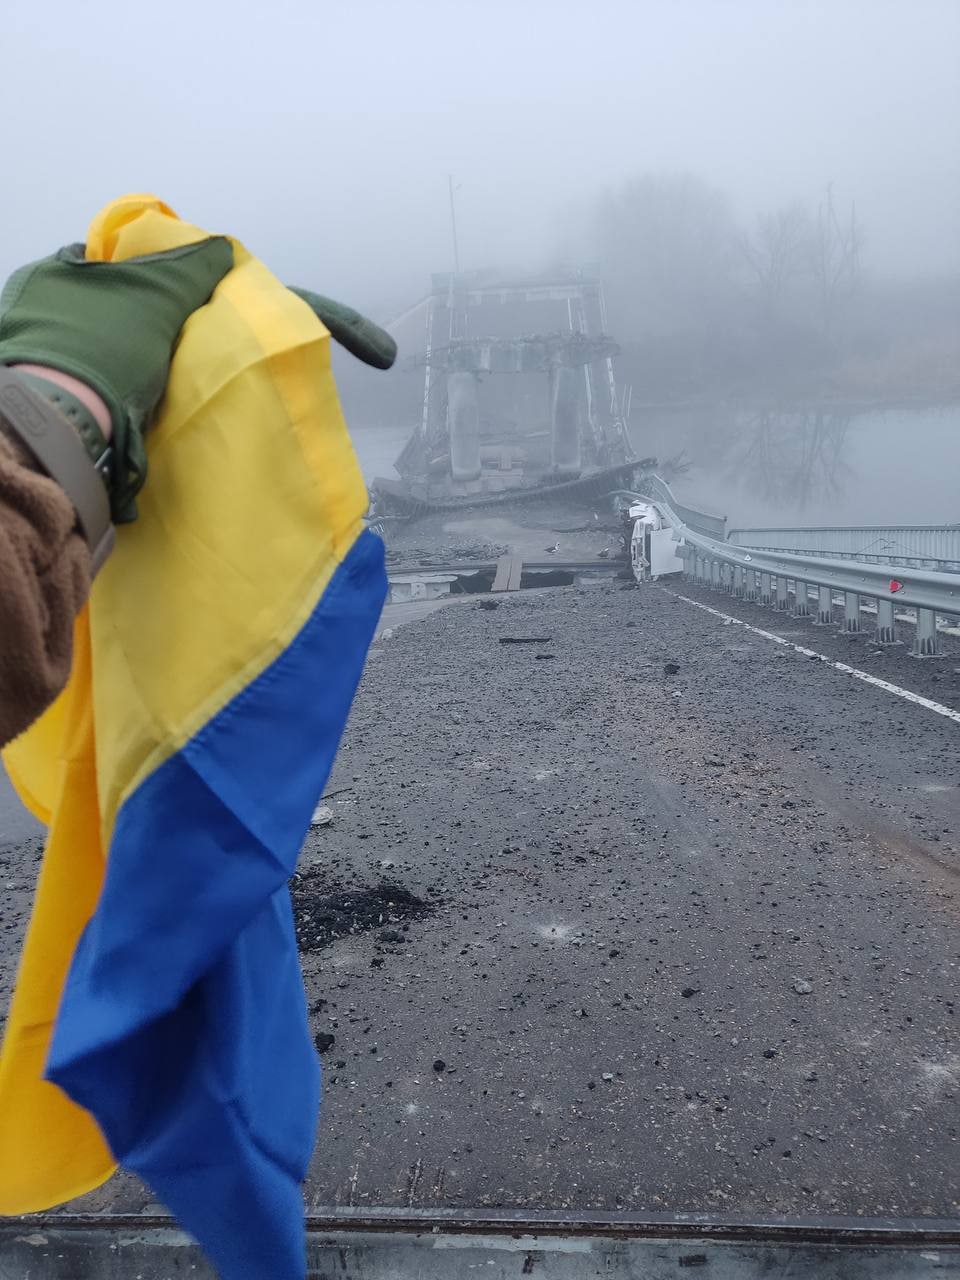 Украинский флаг на Херсонщине